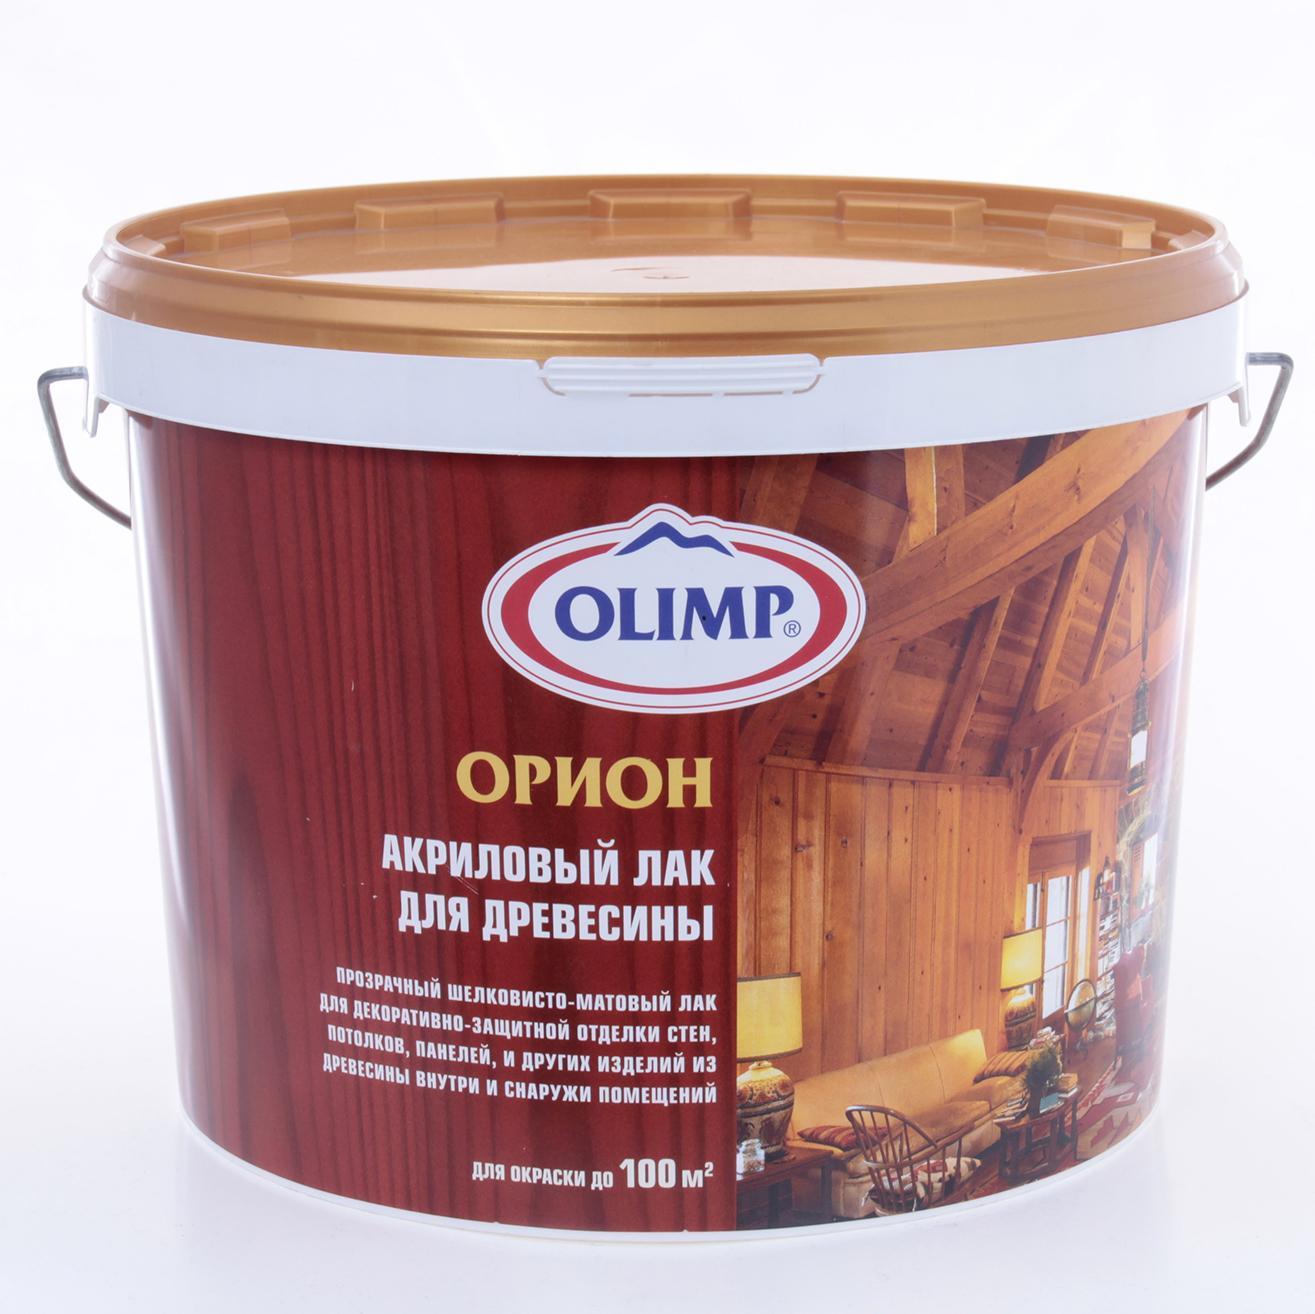 Олимп Орион акриловый лак для древесины